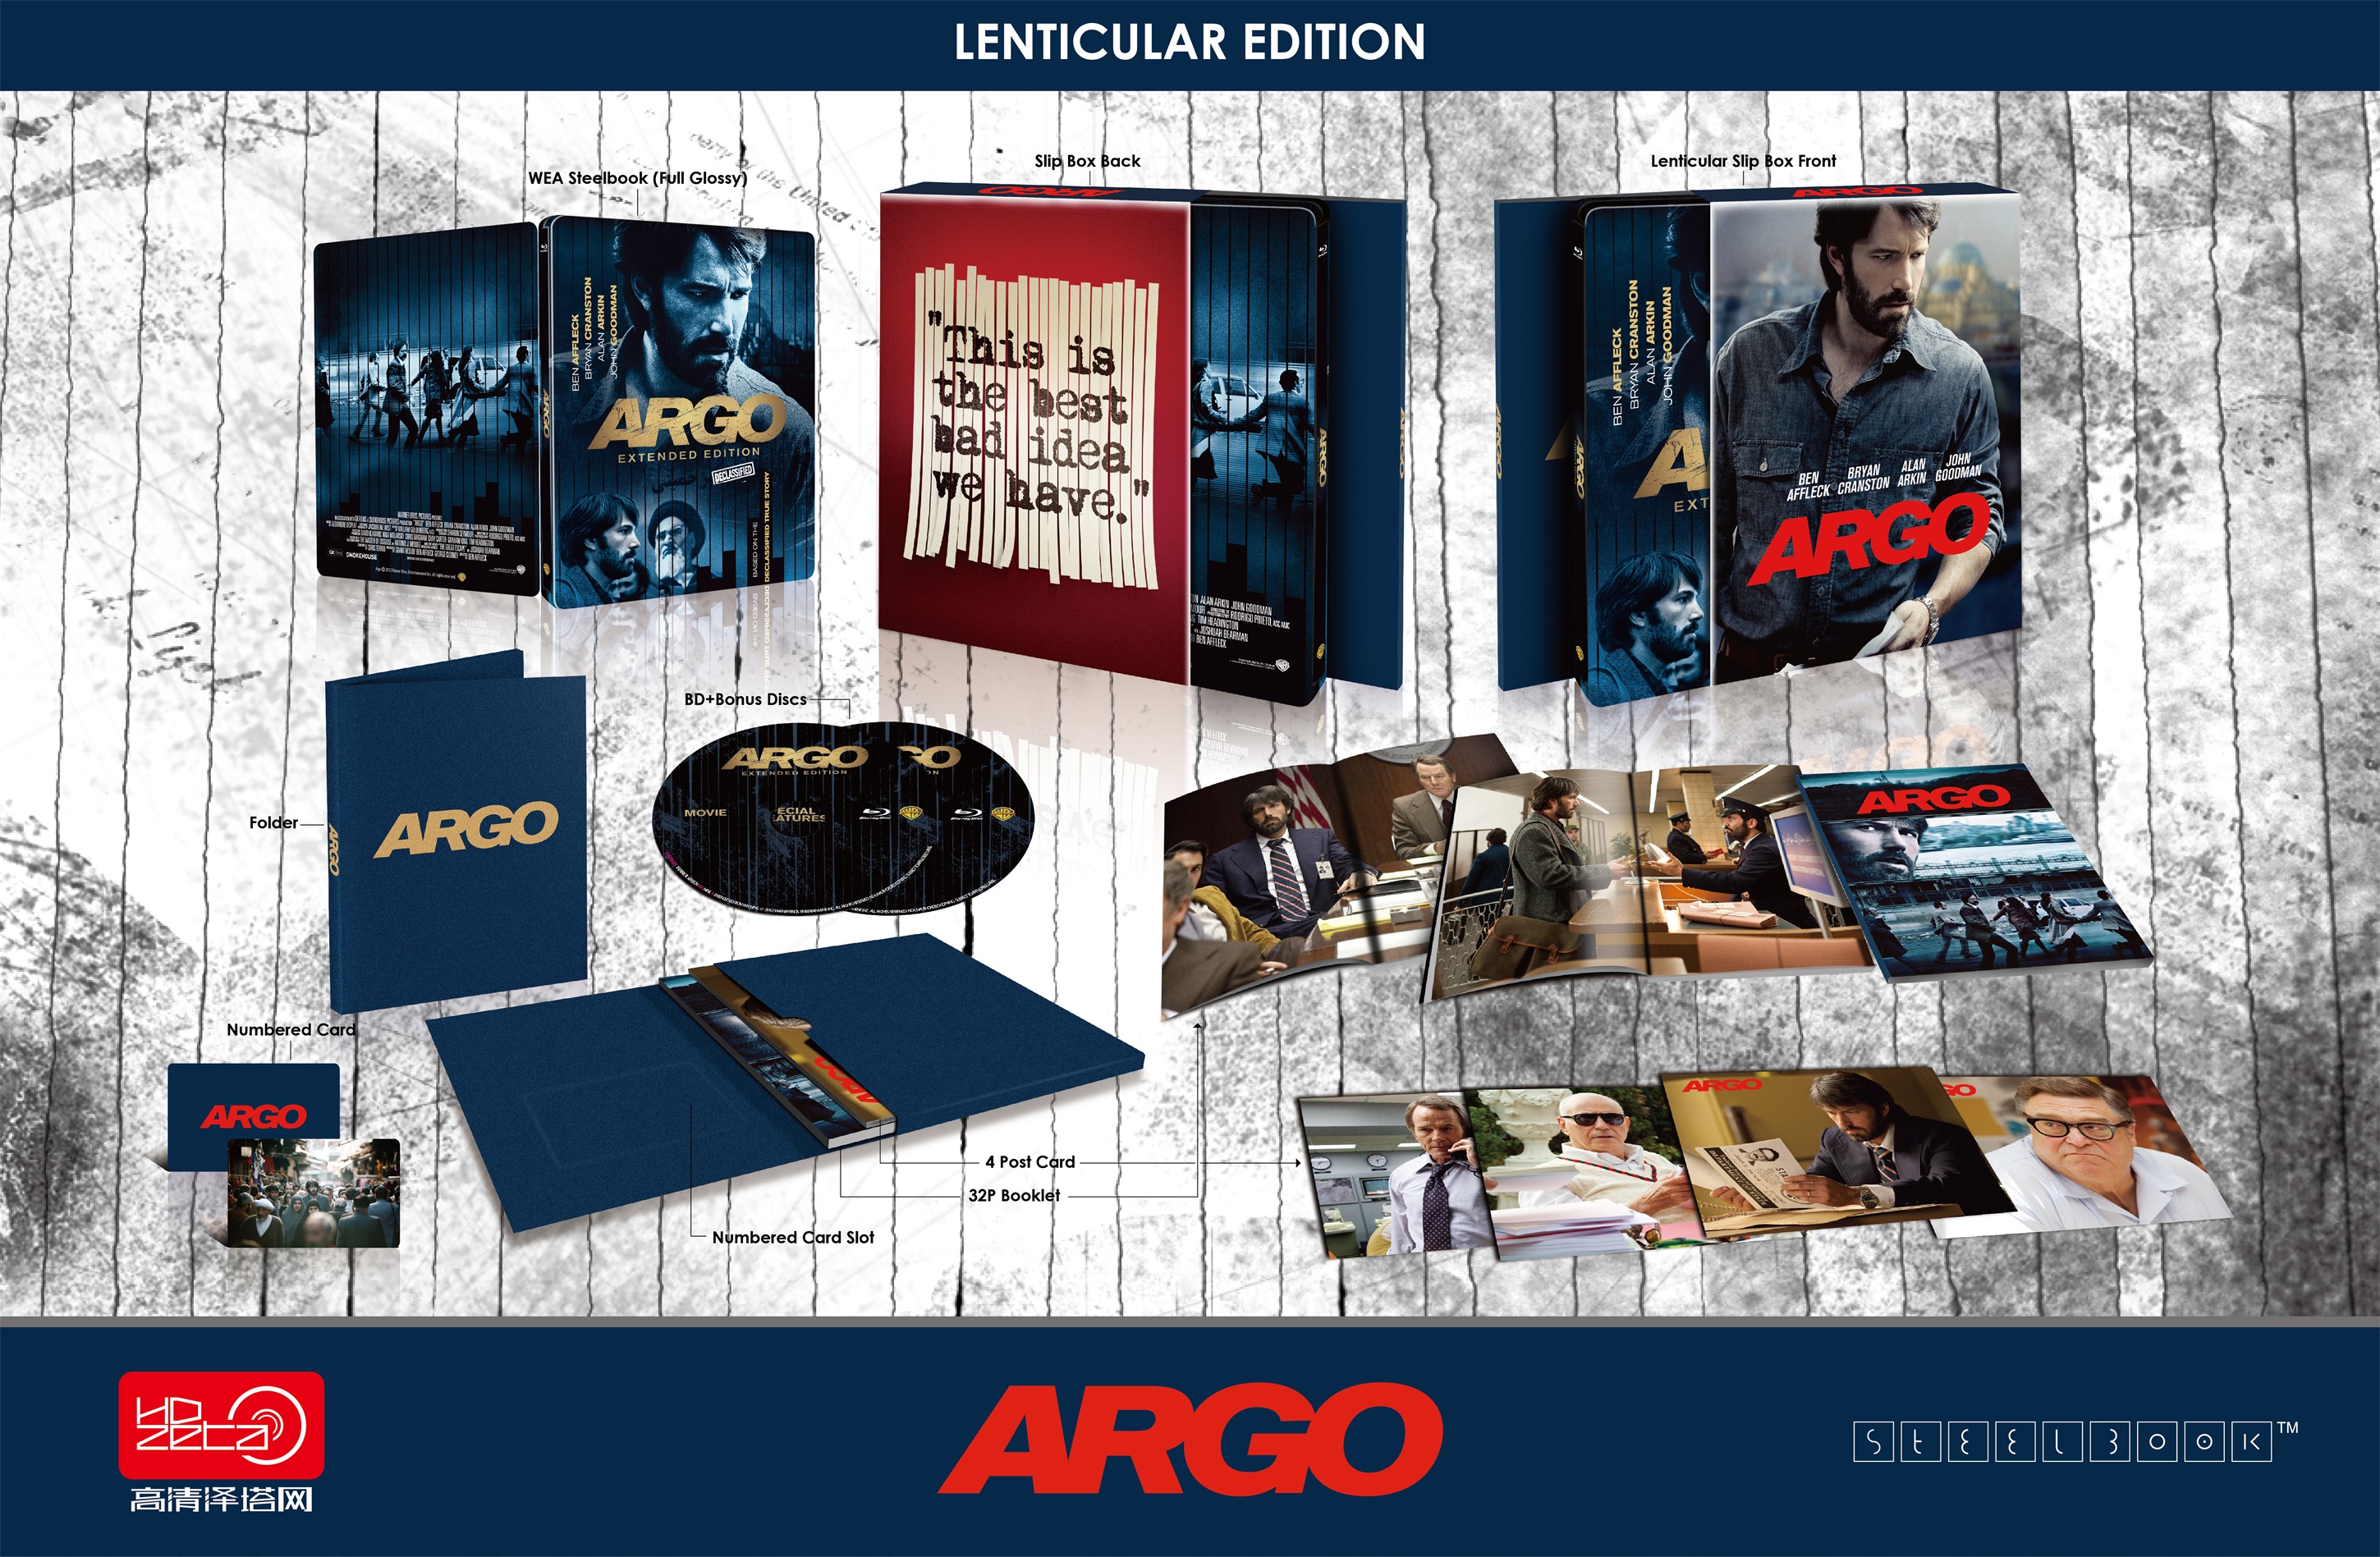 Argo Extended Cut HDzeta Exclsive Lenticular Edition